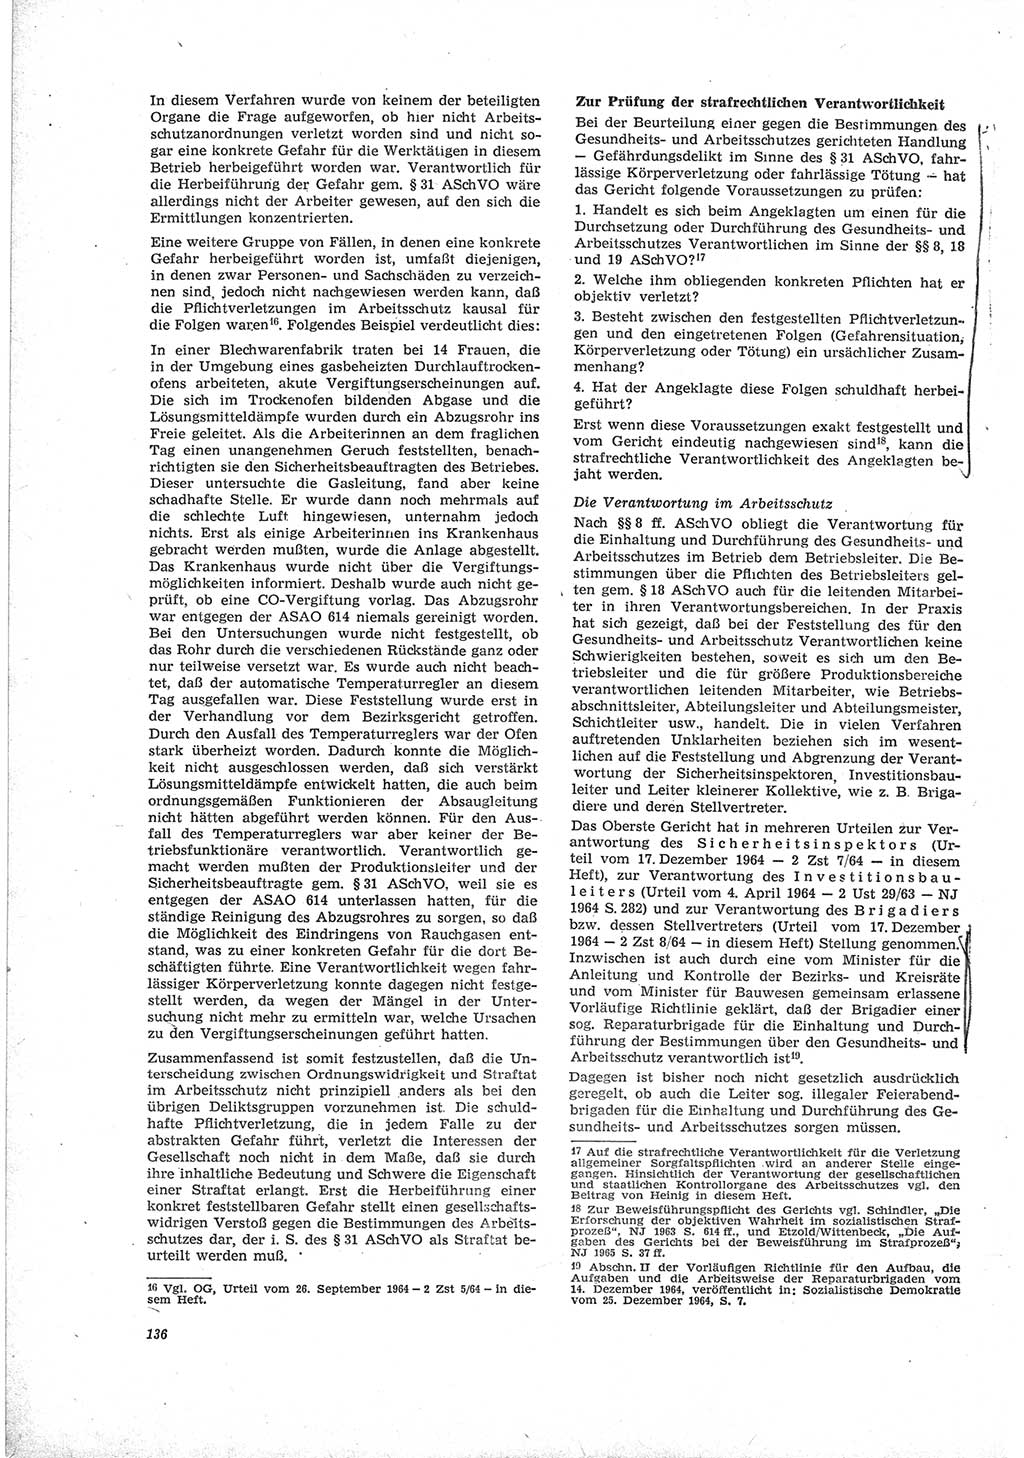 Neue Justiz (NJ), Zeitschrift für Recht und Rechtswissenschaft [Deutsche Demokratische Republik (DDR)], 19. Jahrgang 1965, Seite 136 (NJ DDR 1965, S. 136)